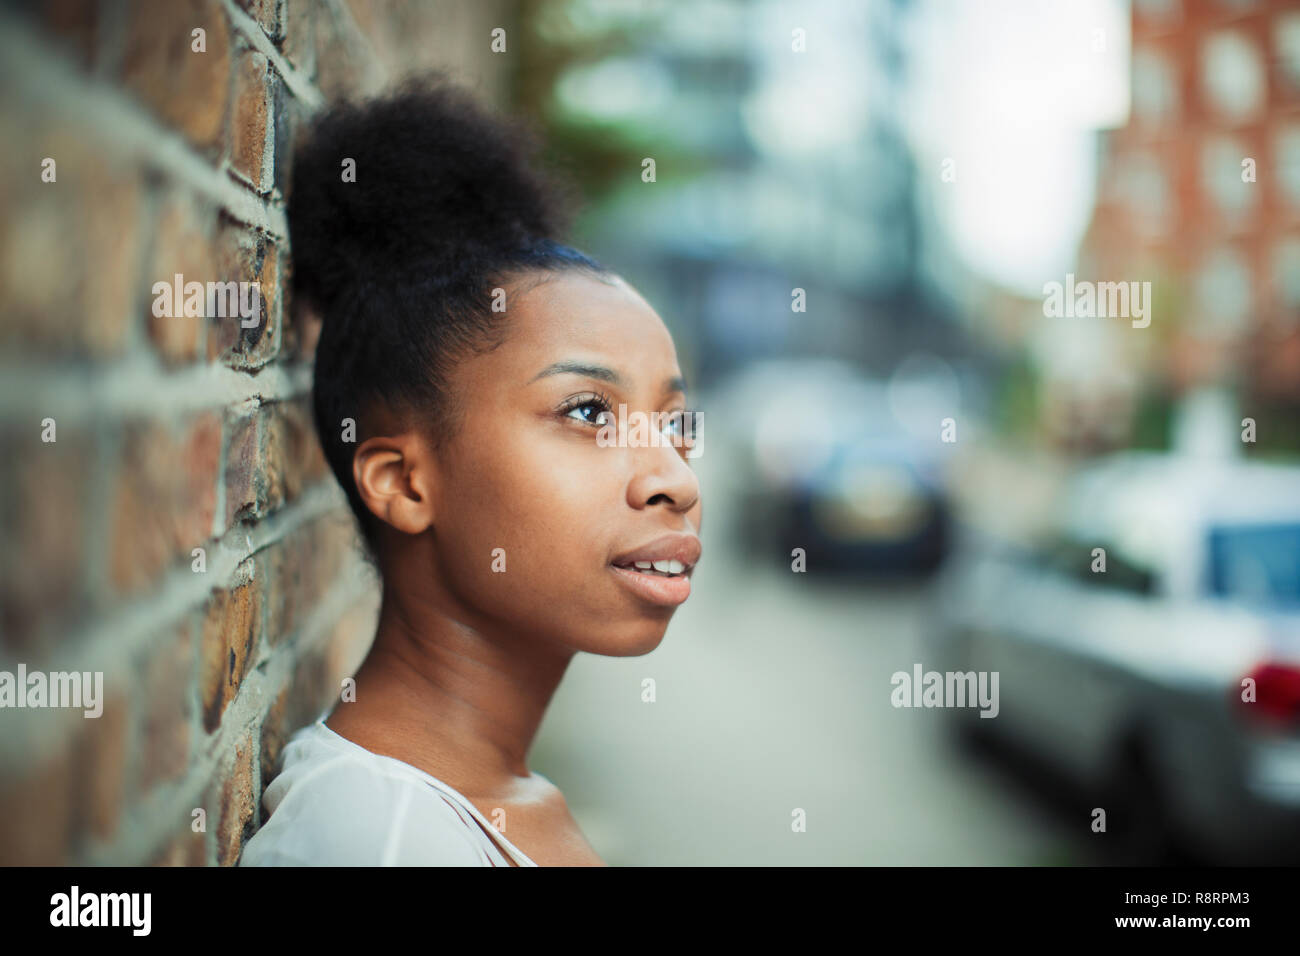 Thoughtful woman looking away on urban street Stock Photo